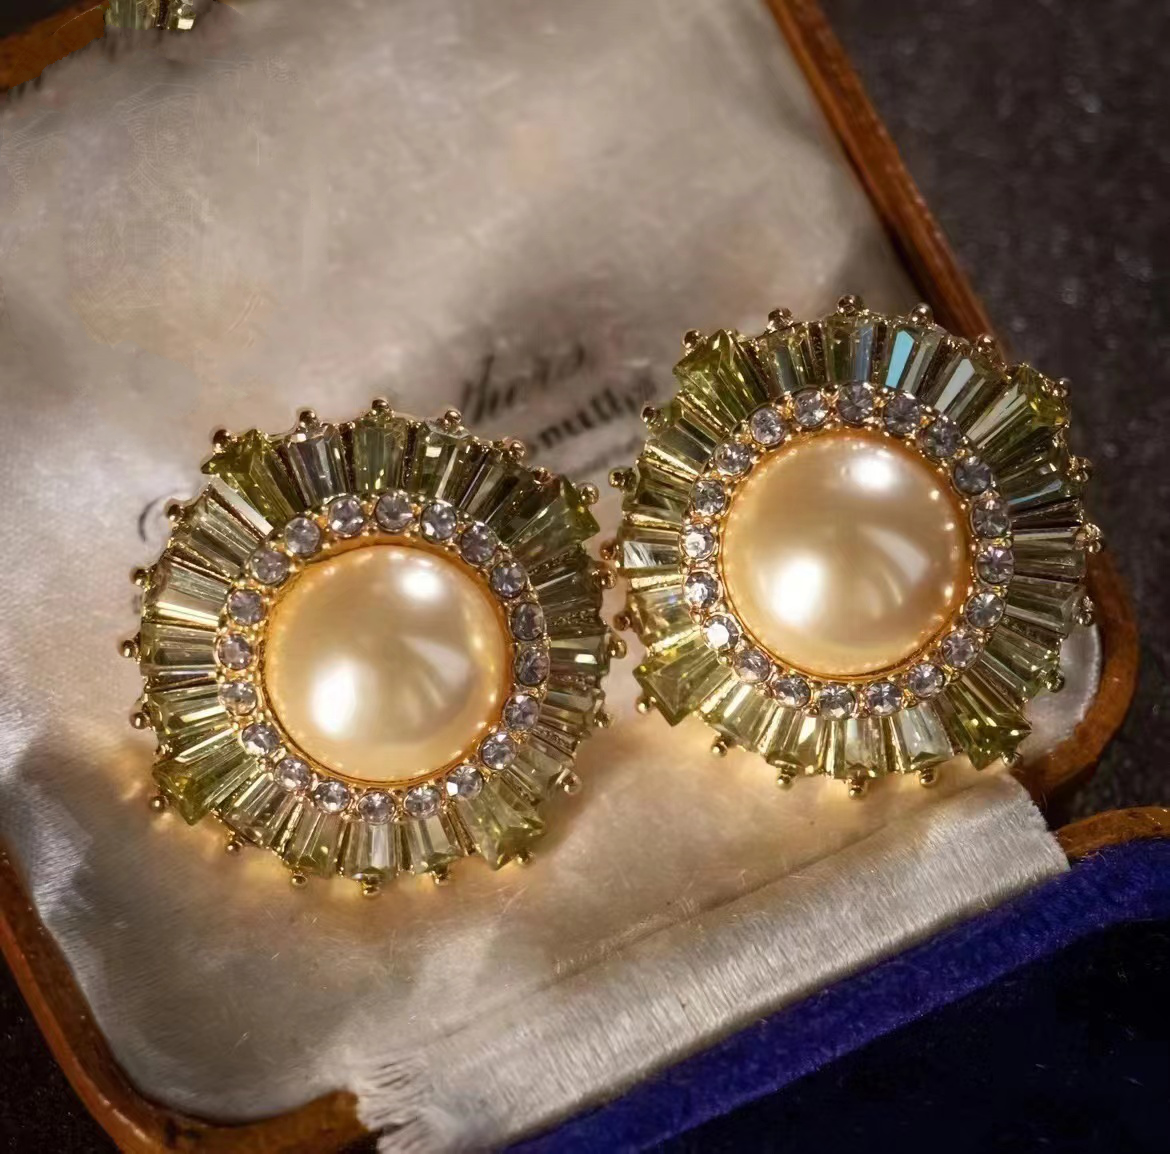 Paris night vintage earrings